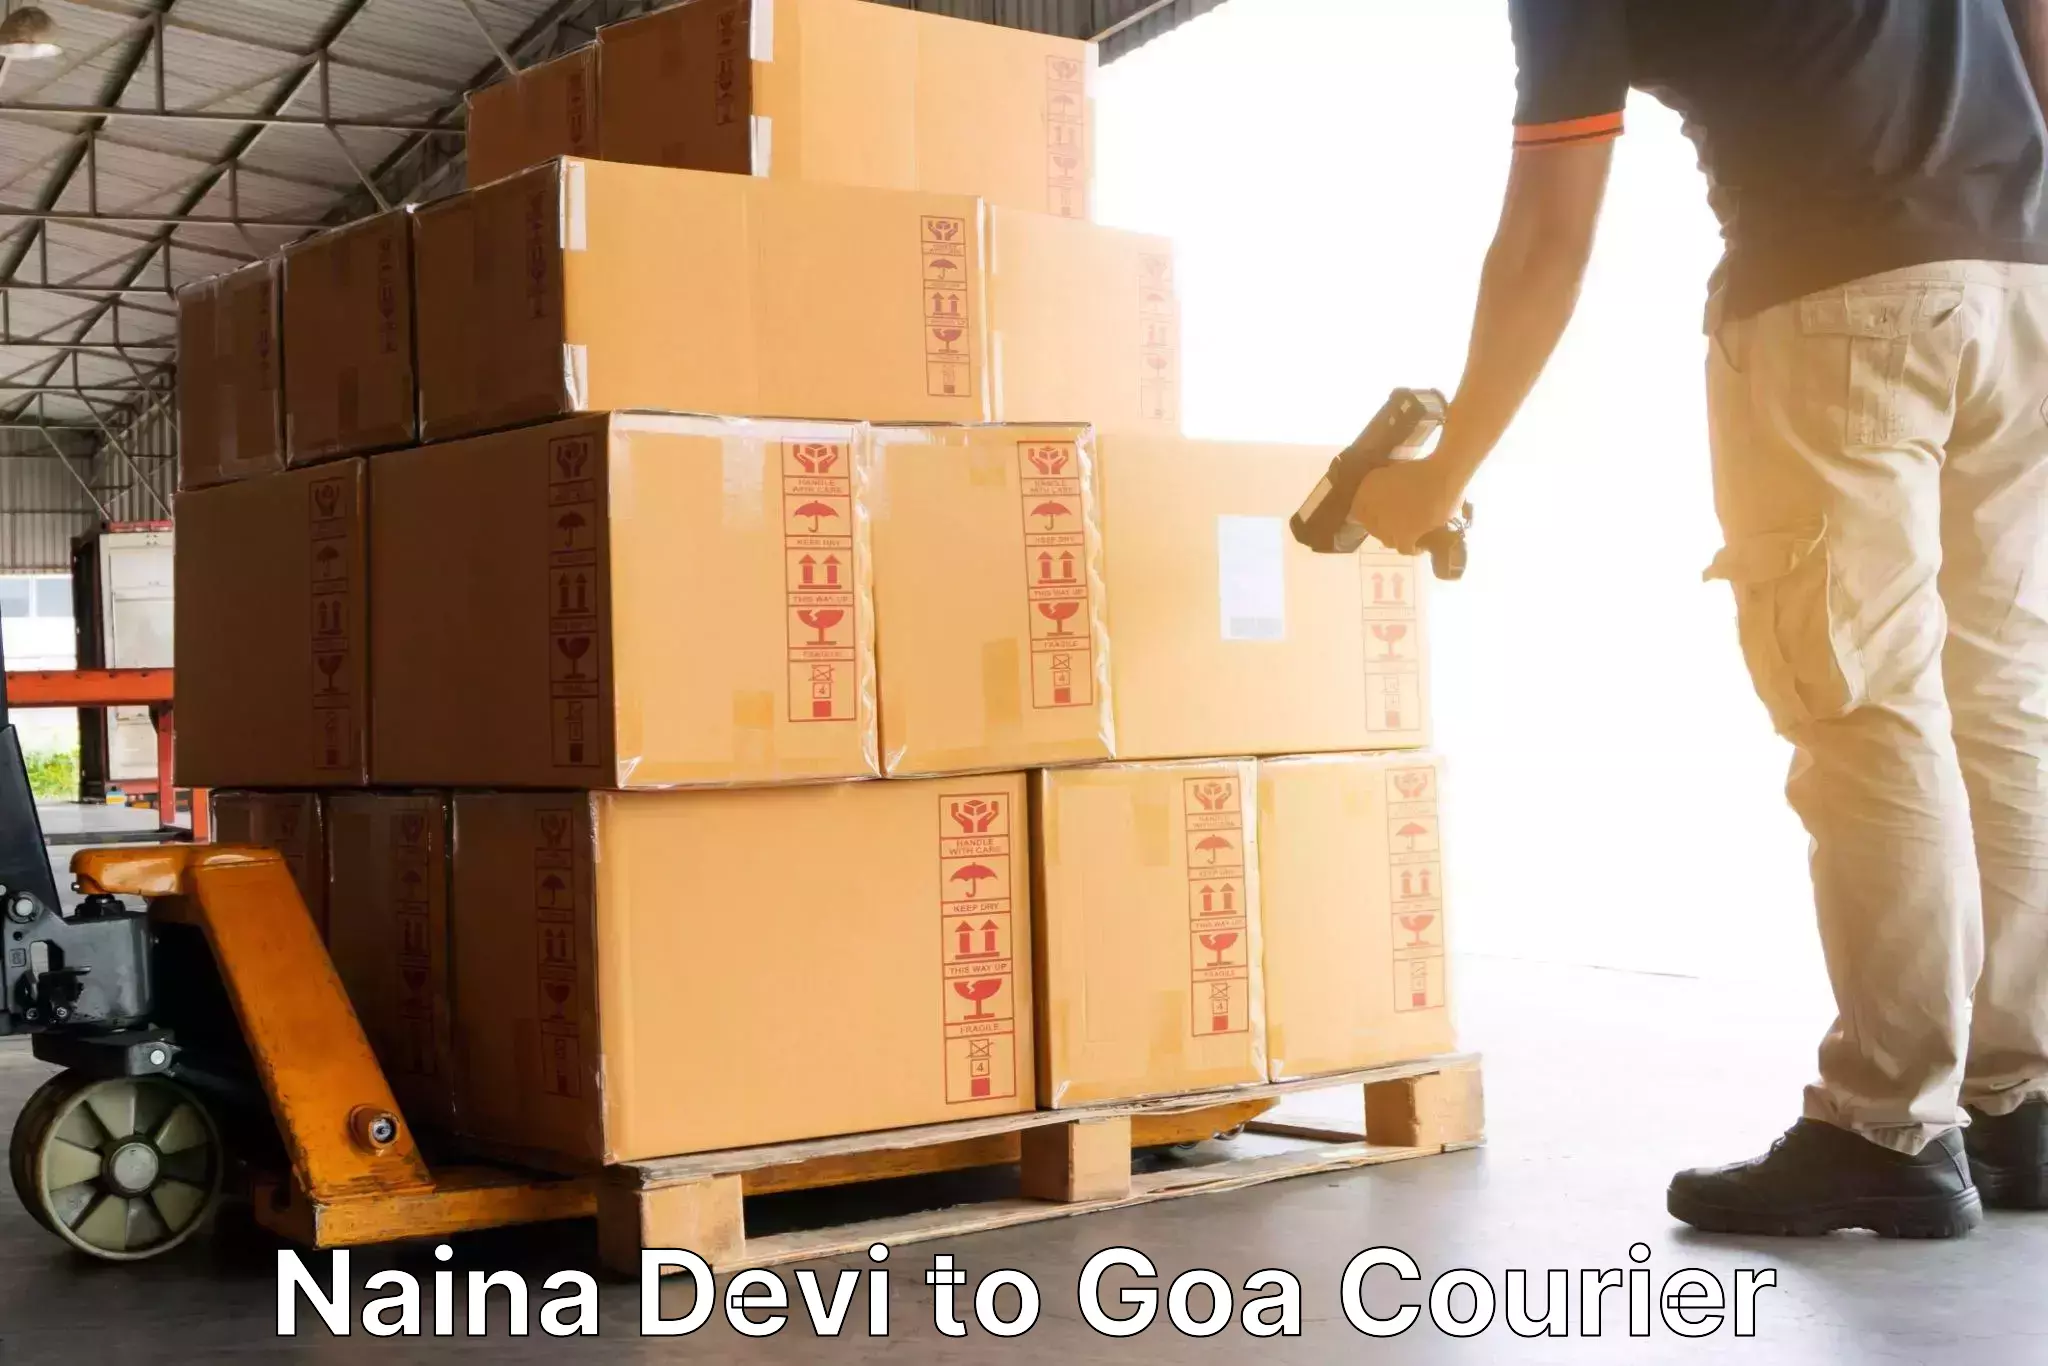 Logistics service provider Naina Devi to Margao